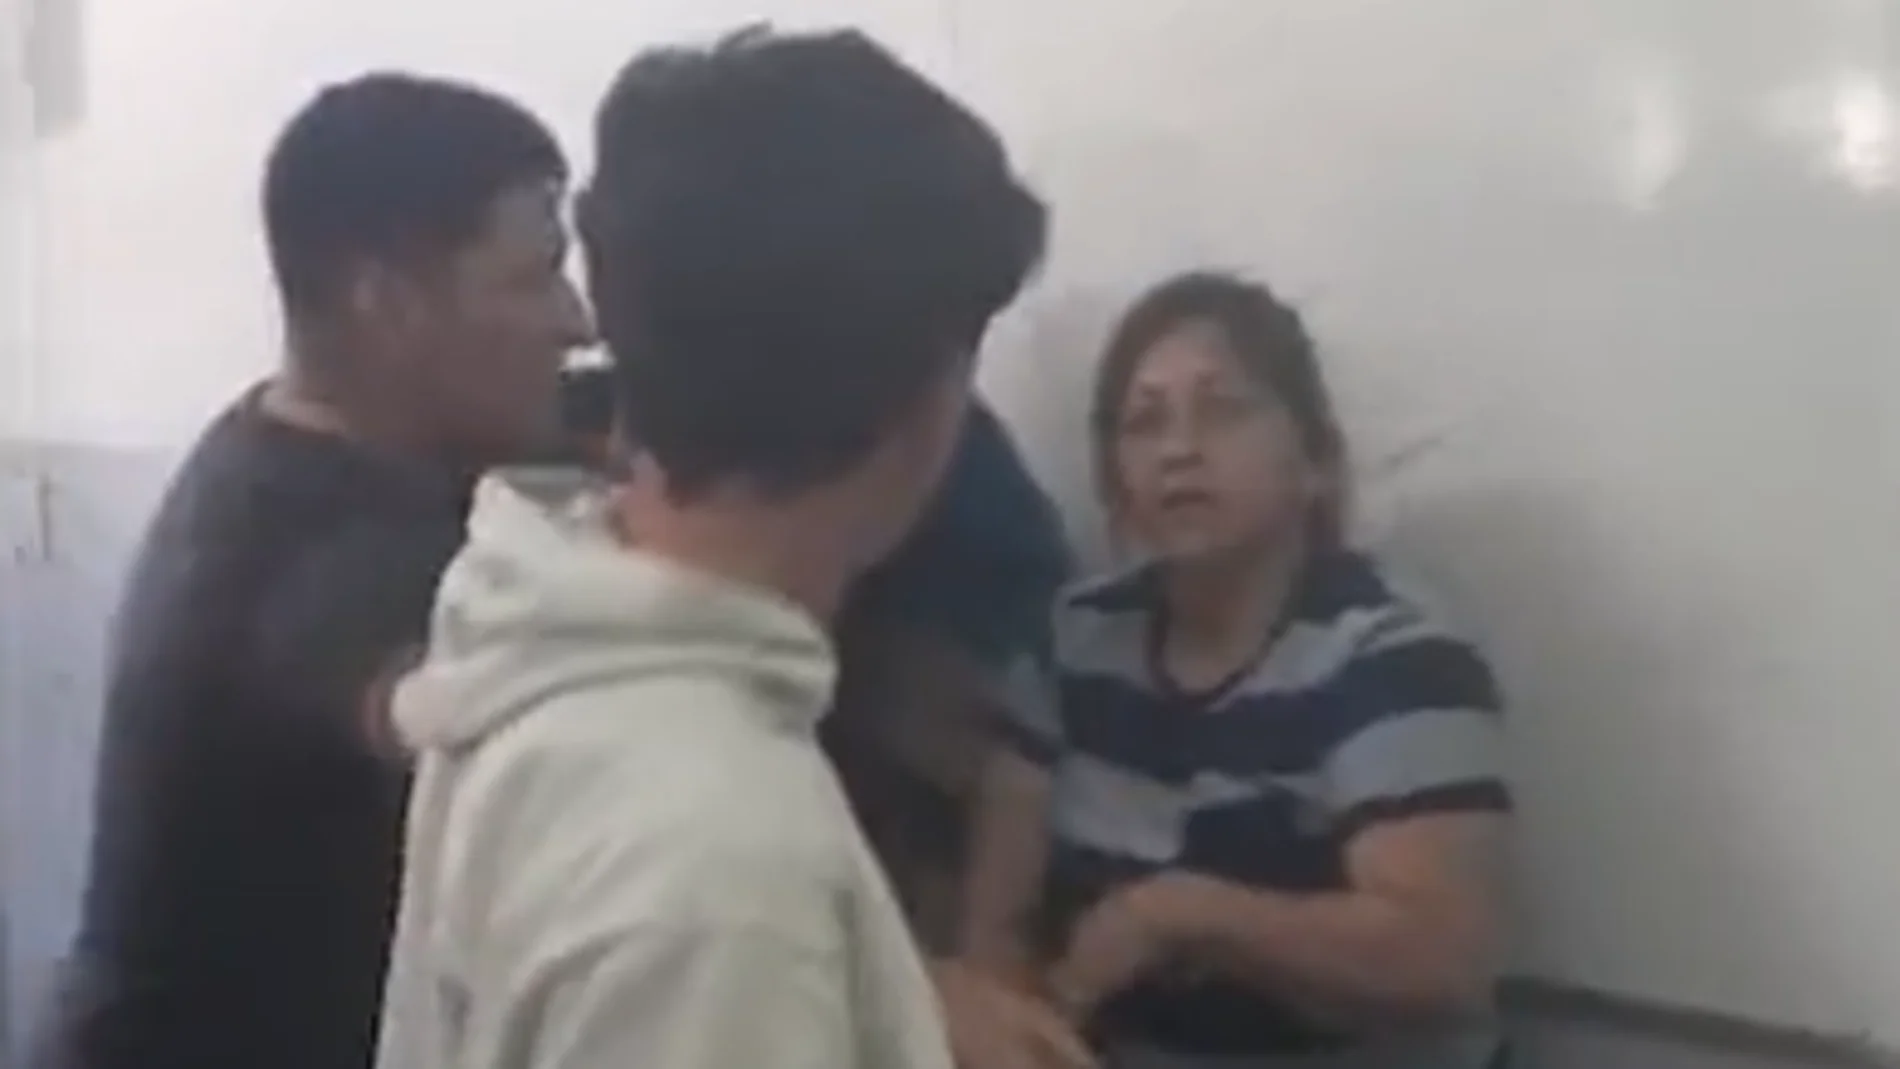 Una madre irrumpe en una clase y golpea a un estudiante mientras le acusa de hacer bullying a su hijo